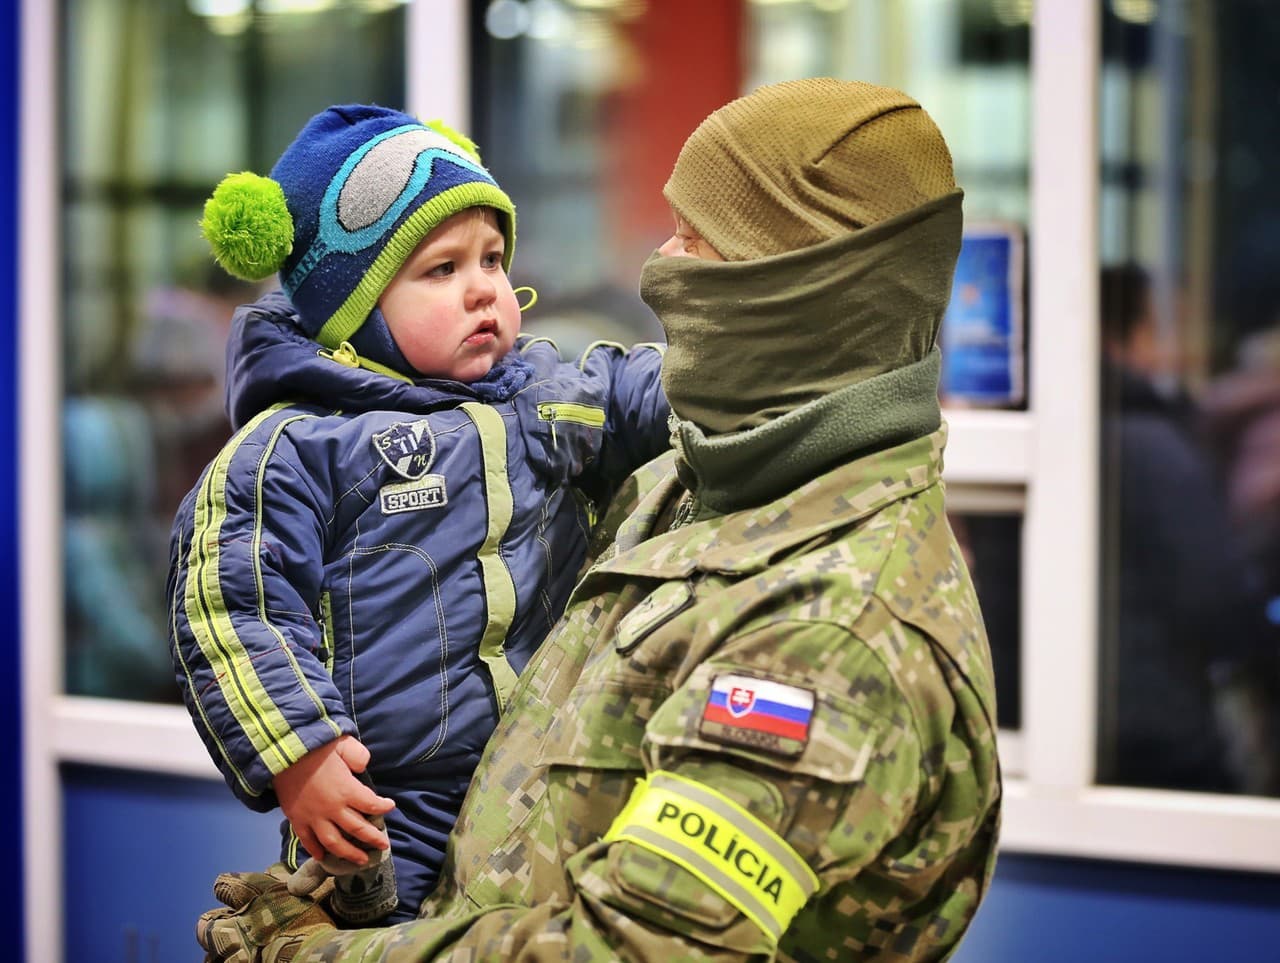 Vojak na hraničnom priechode s Ukrajinou